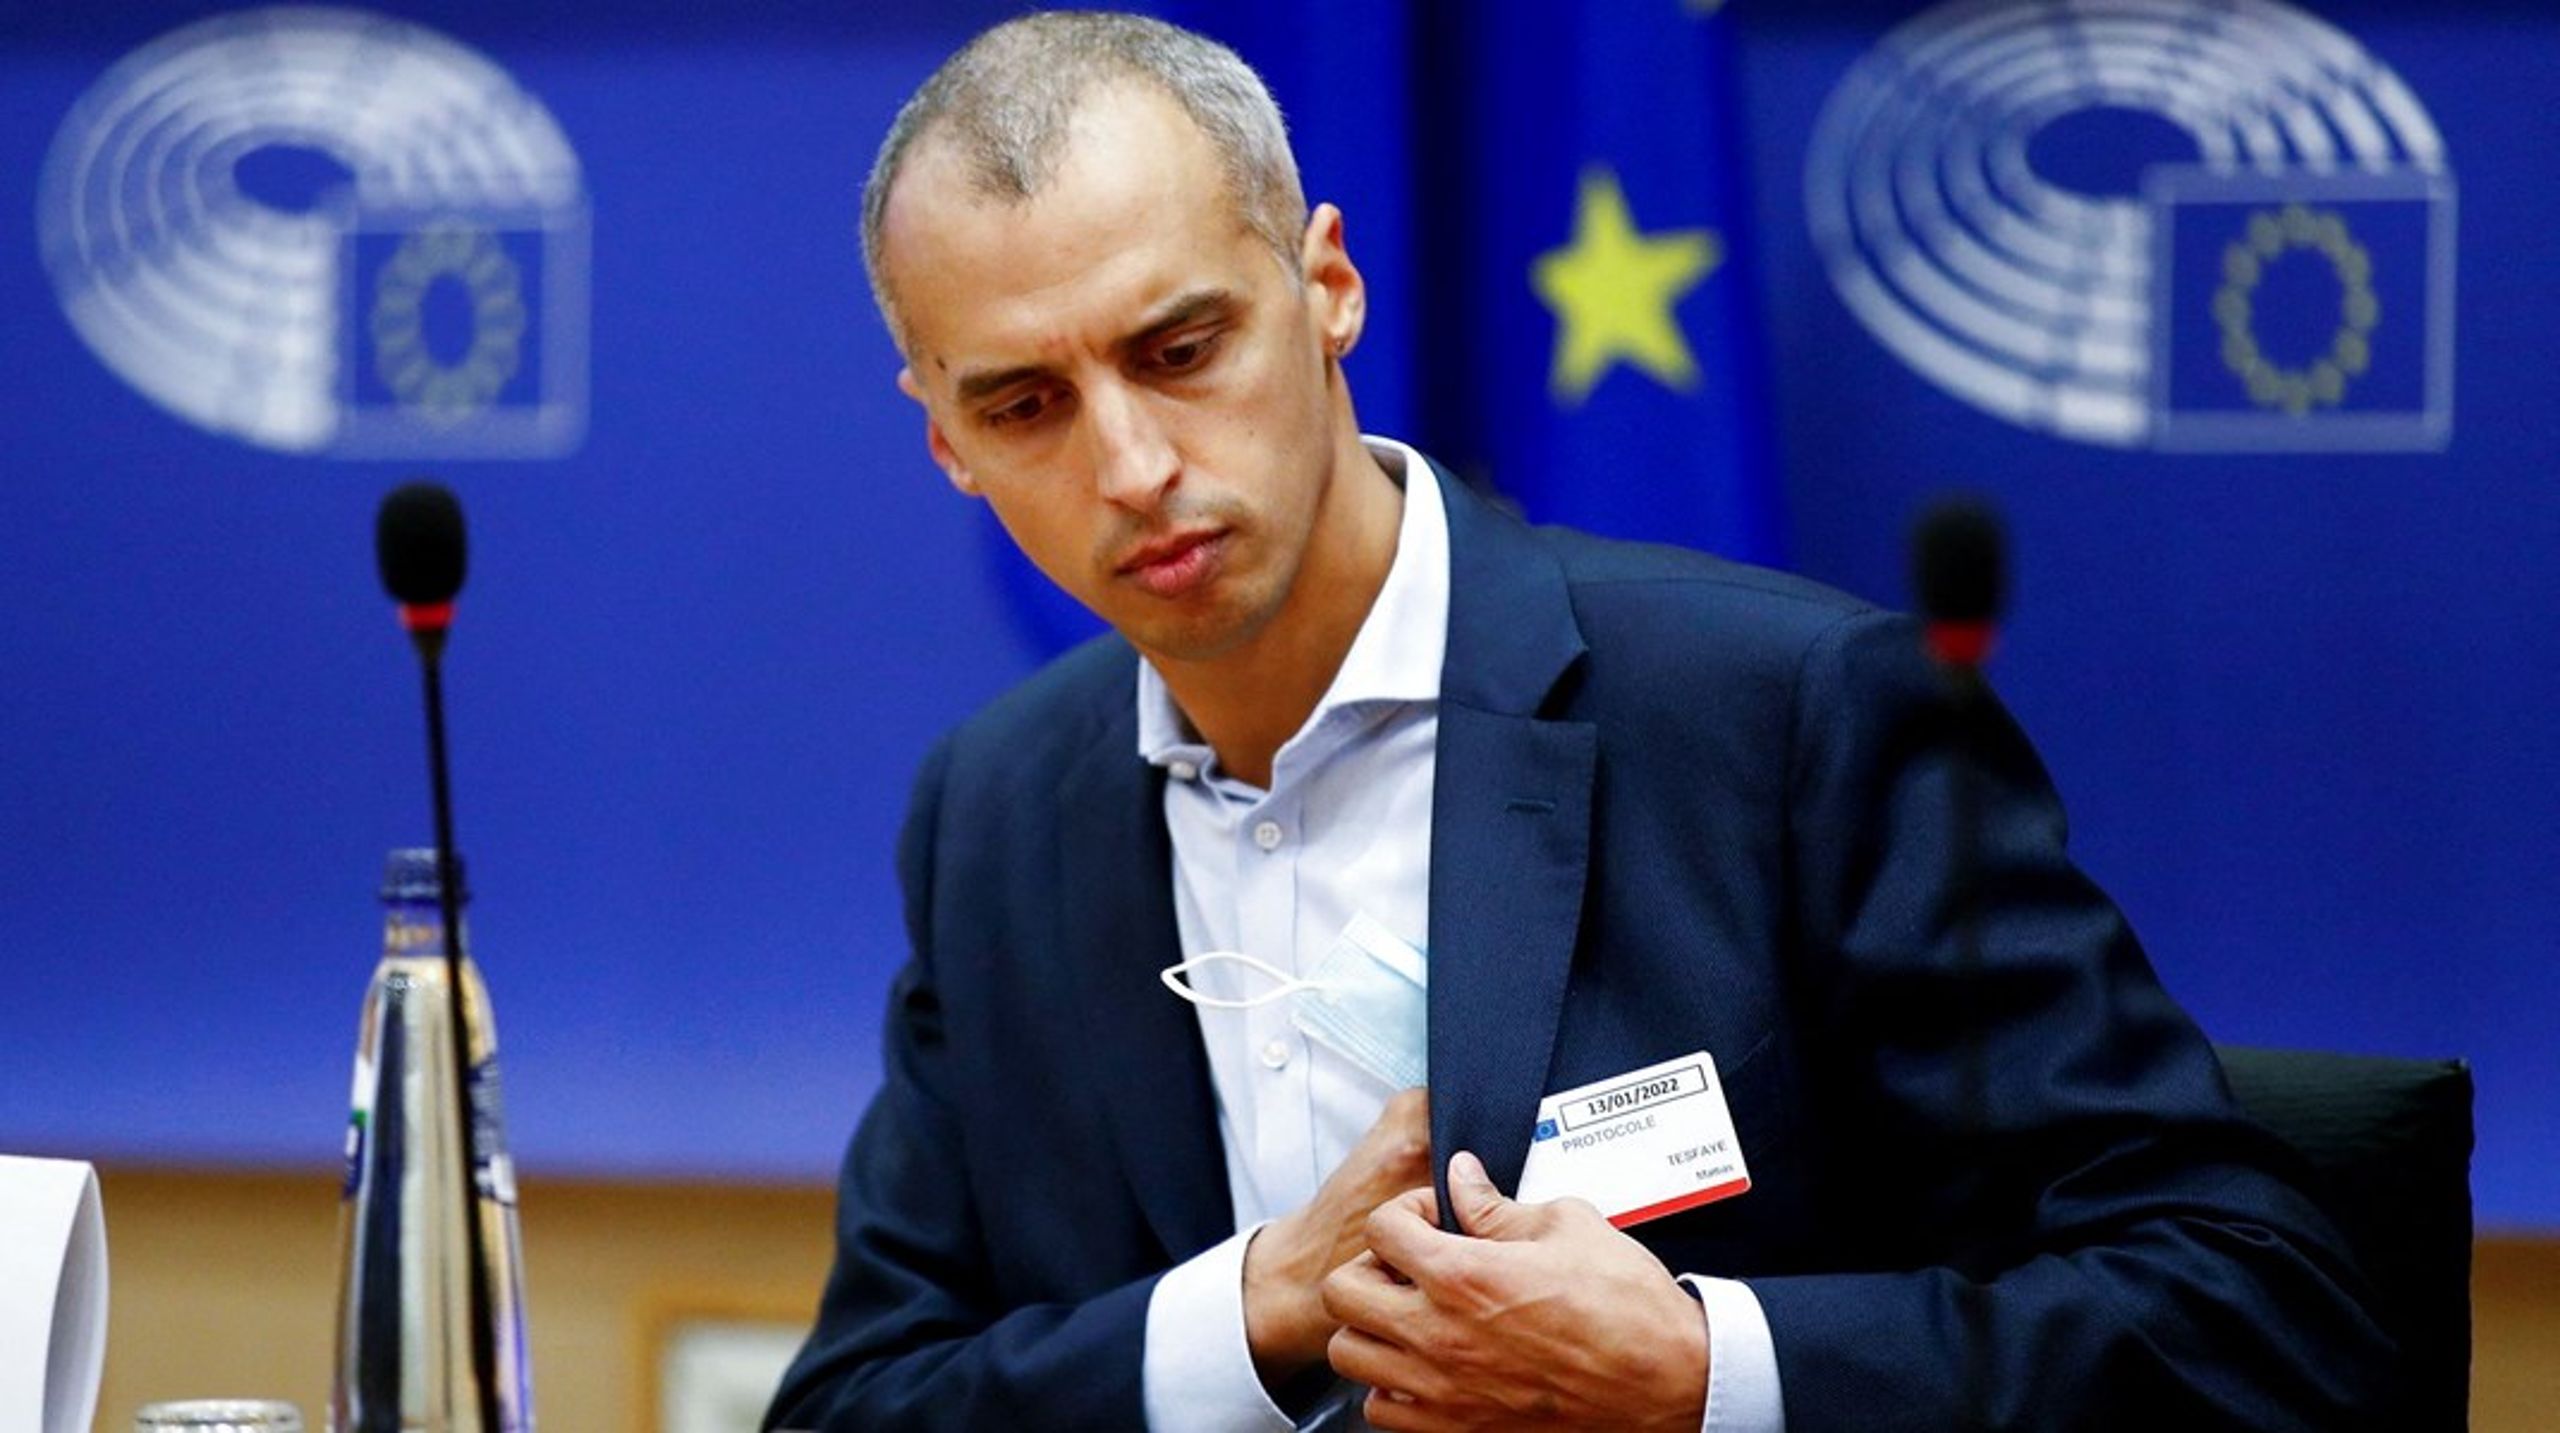 Udlændinge- og integrationsminister Mattias Tesfaye (S) kom i strid modvind i Europa-Parlamentets Borgerrettighedsudvalg.